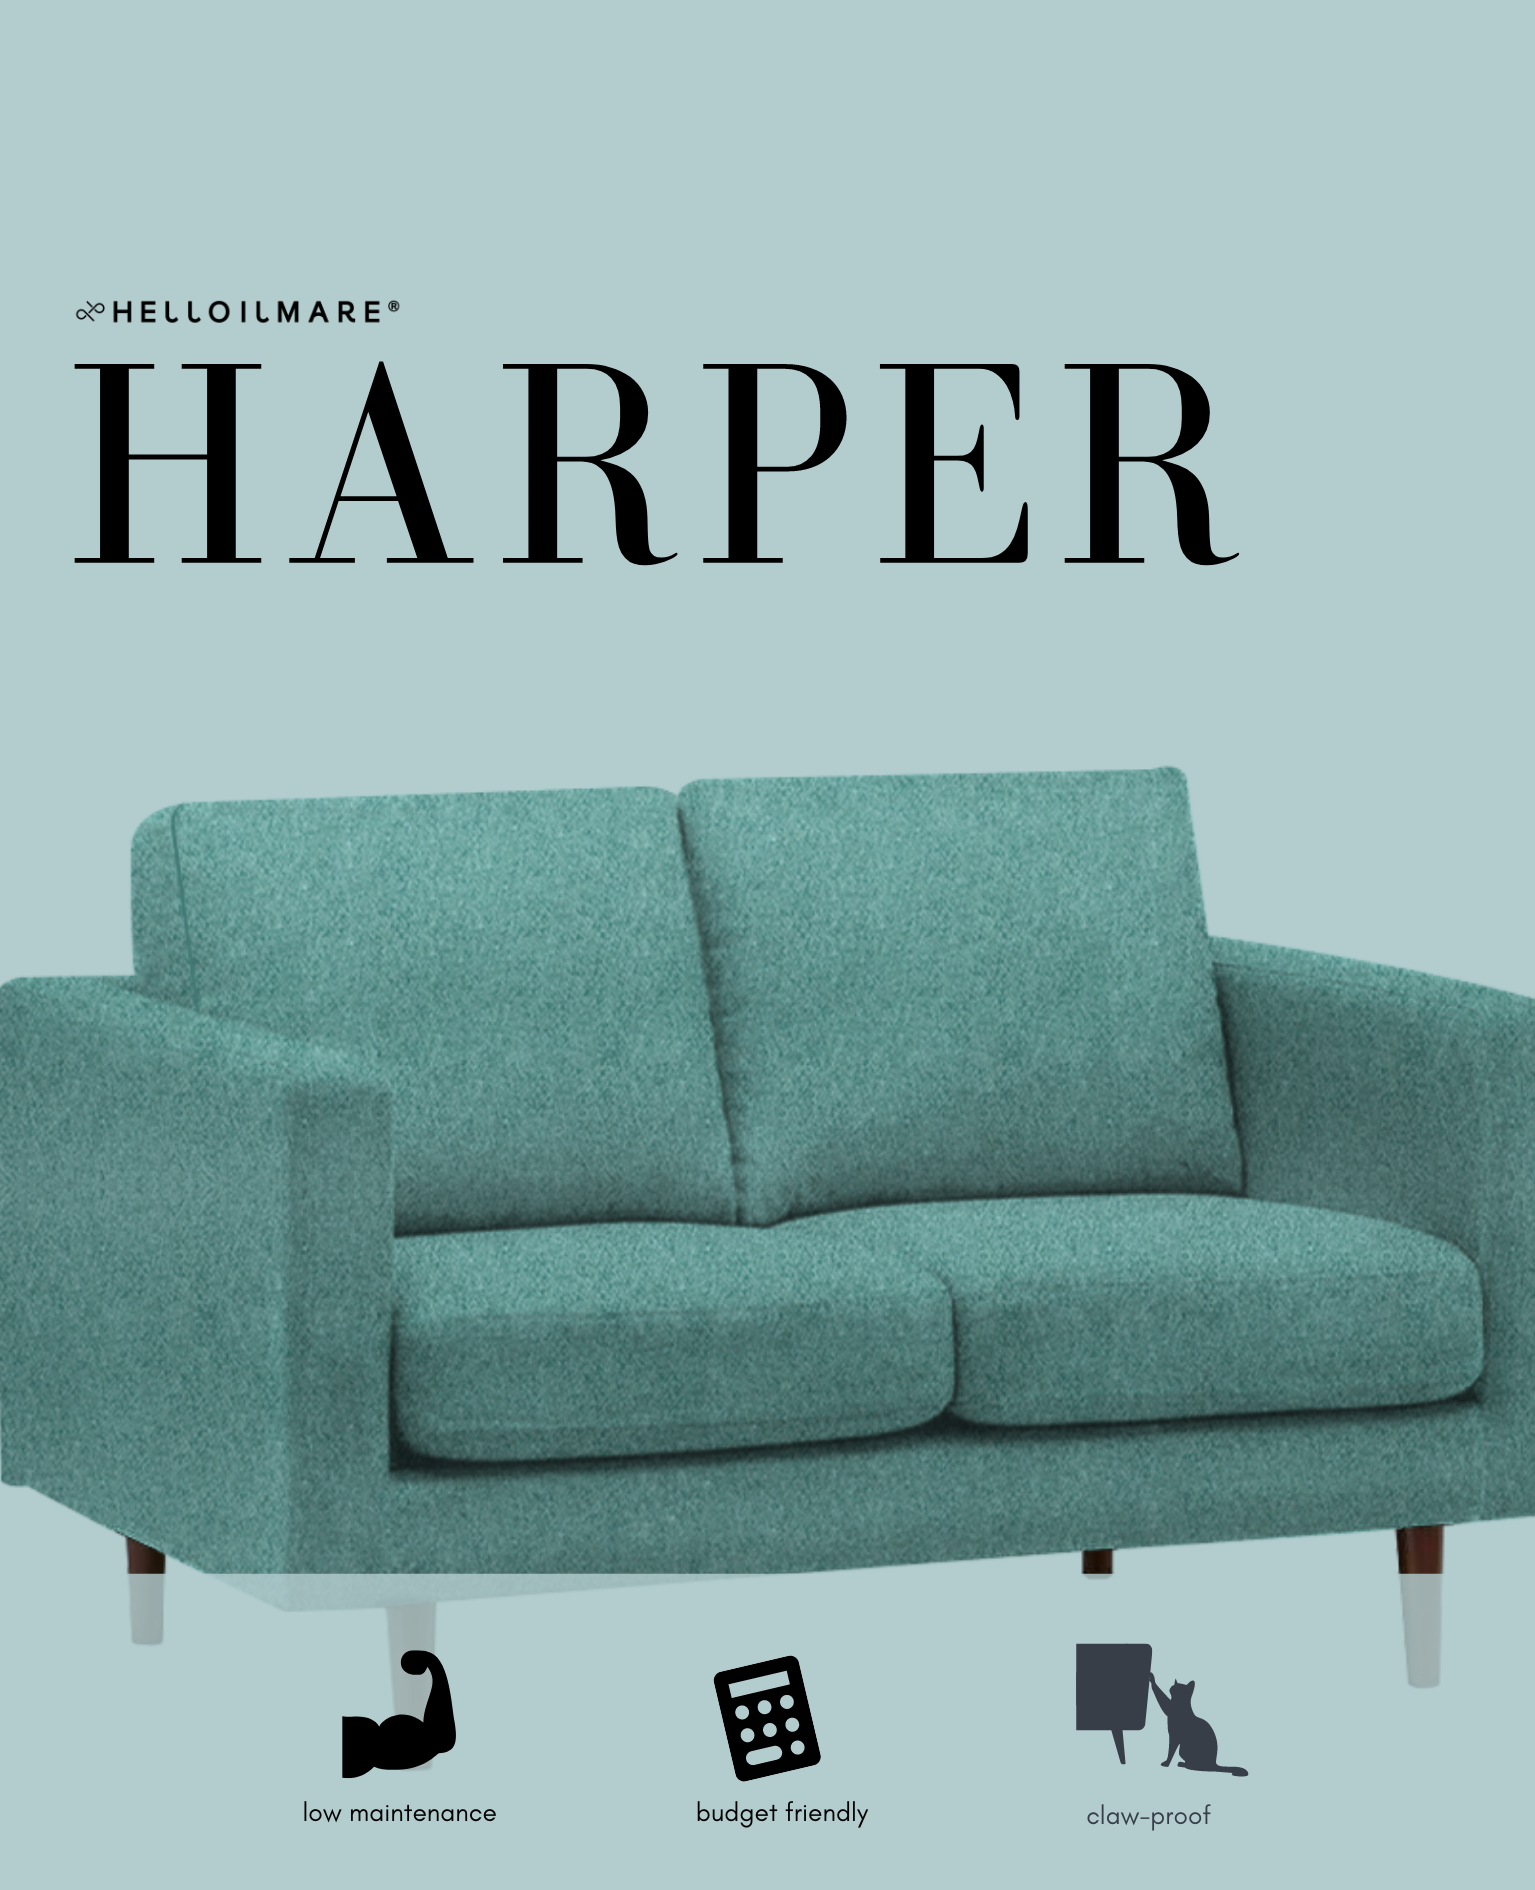 2 Seater Harper - Helloilmare